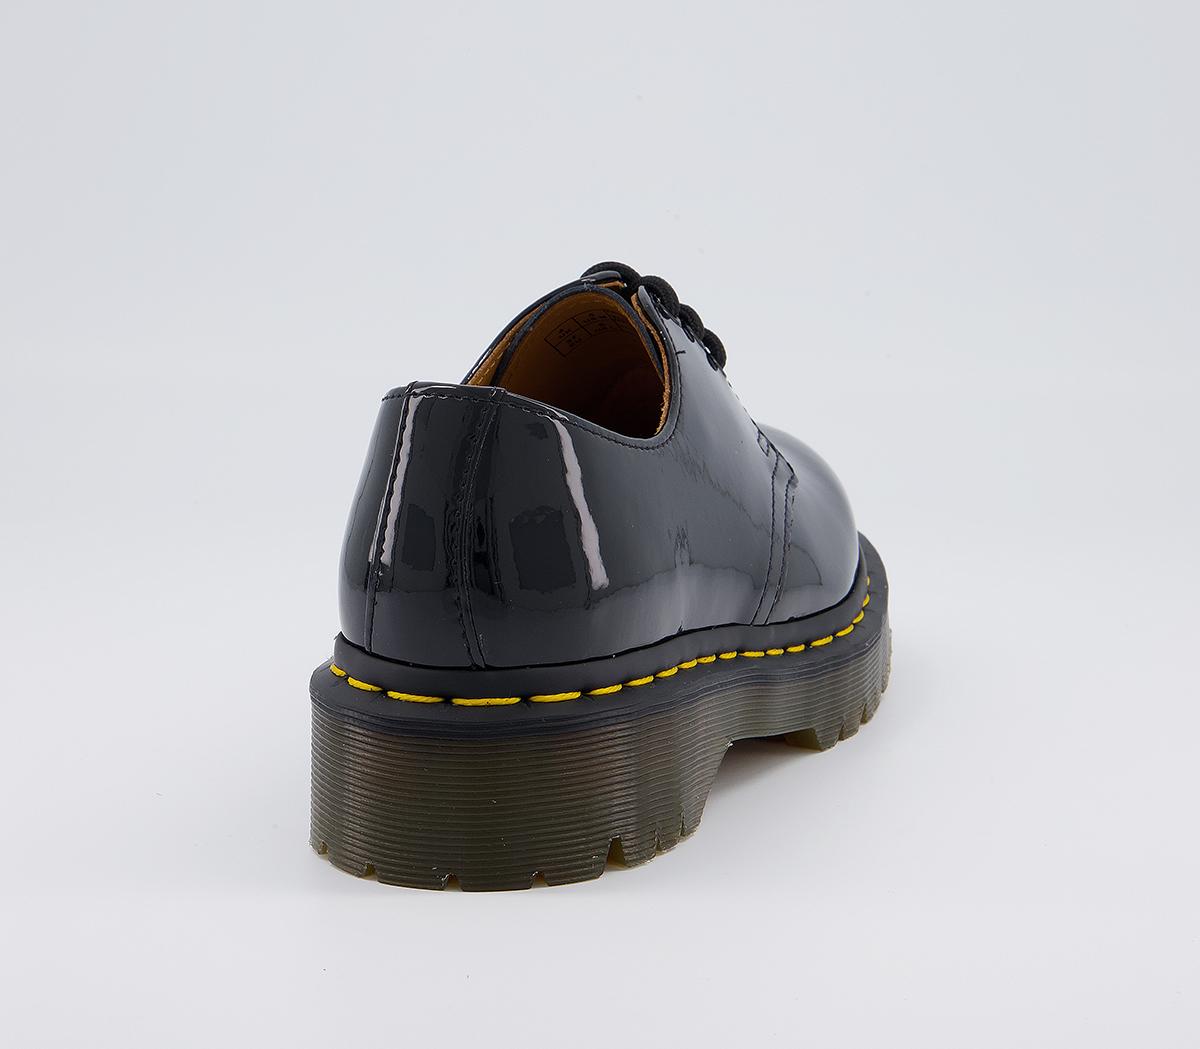 Dr. Martens Bex Shoes Black Patent - Flat Shoes for Women